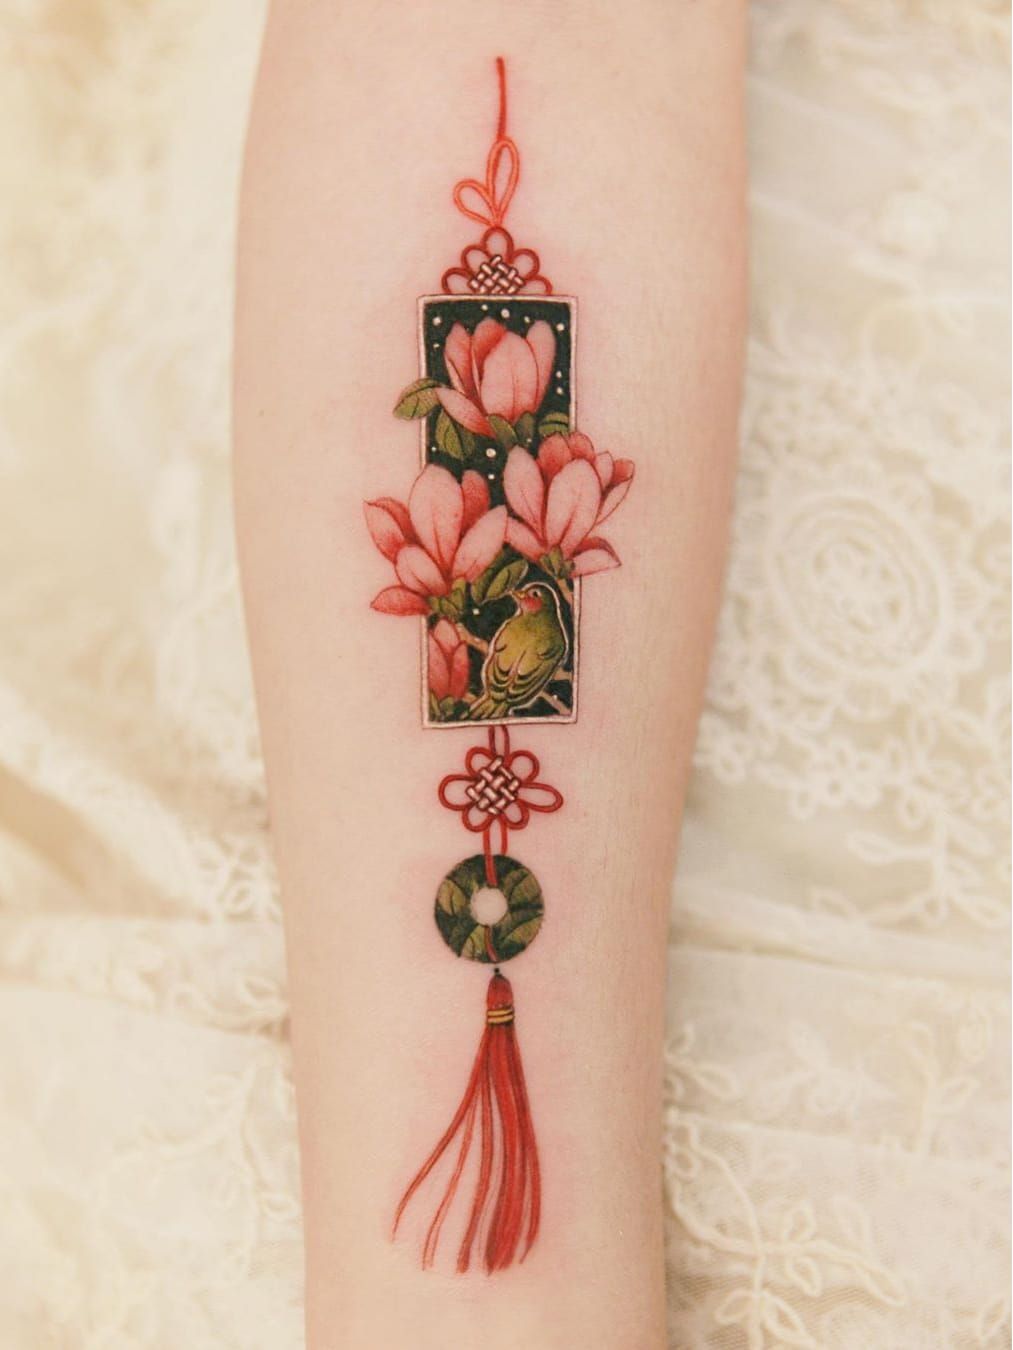 Tattoo uploaded by Tattoodo • Ornamental tattoo by Sion #Sion  #TattooistSion #ornamentaltattoos #ornamental #ornaments #jewels  #decorative #jewelry #adorn #gems #crystals #diamonds #pearls #floral  #norigae #knot #bird #flower • Tattoodo